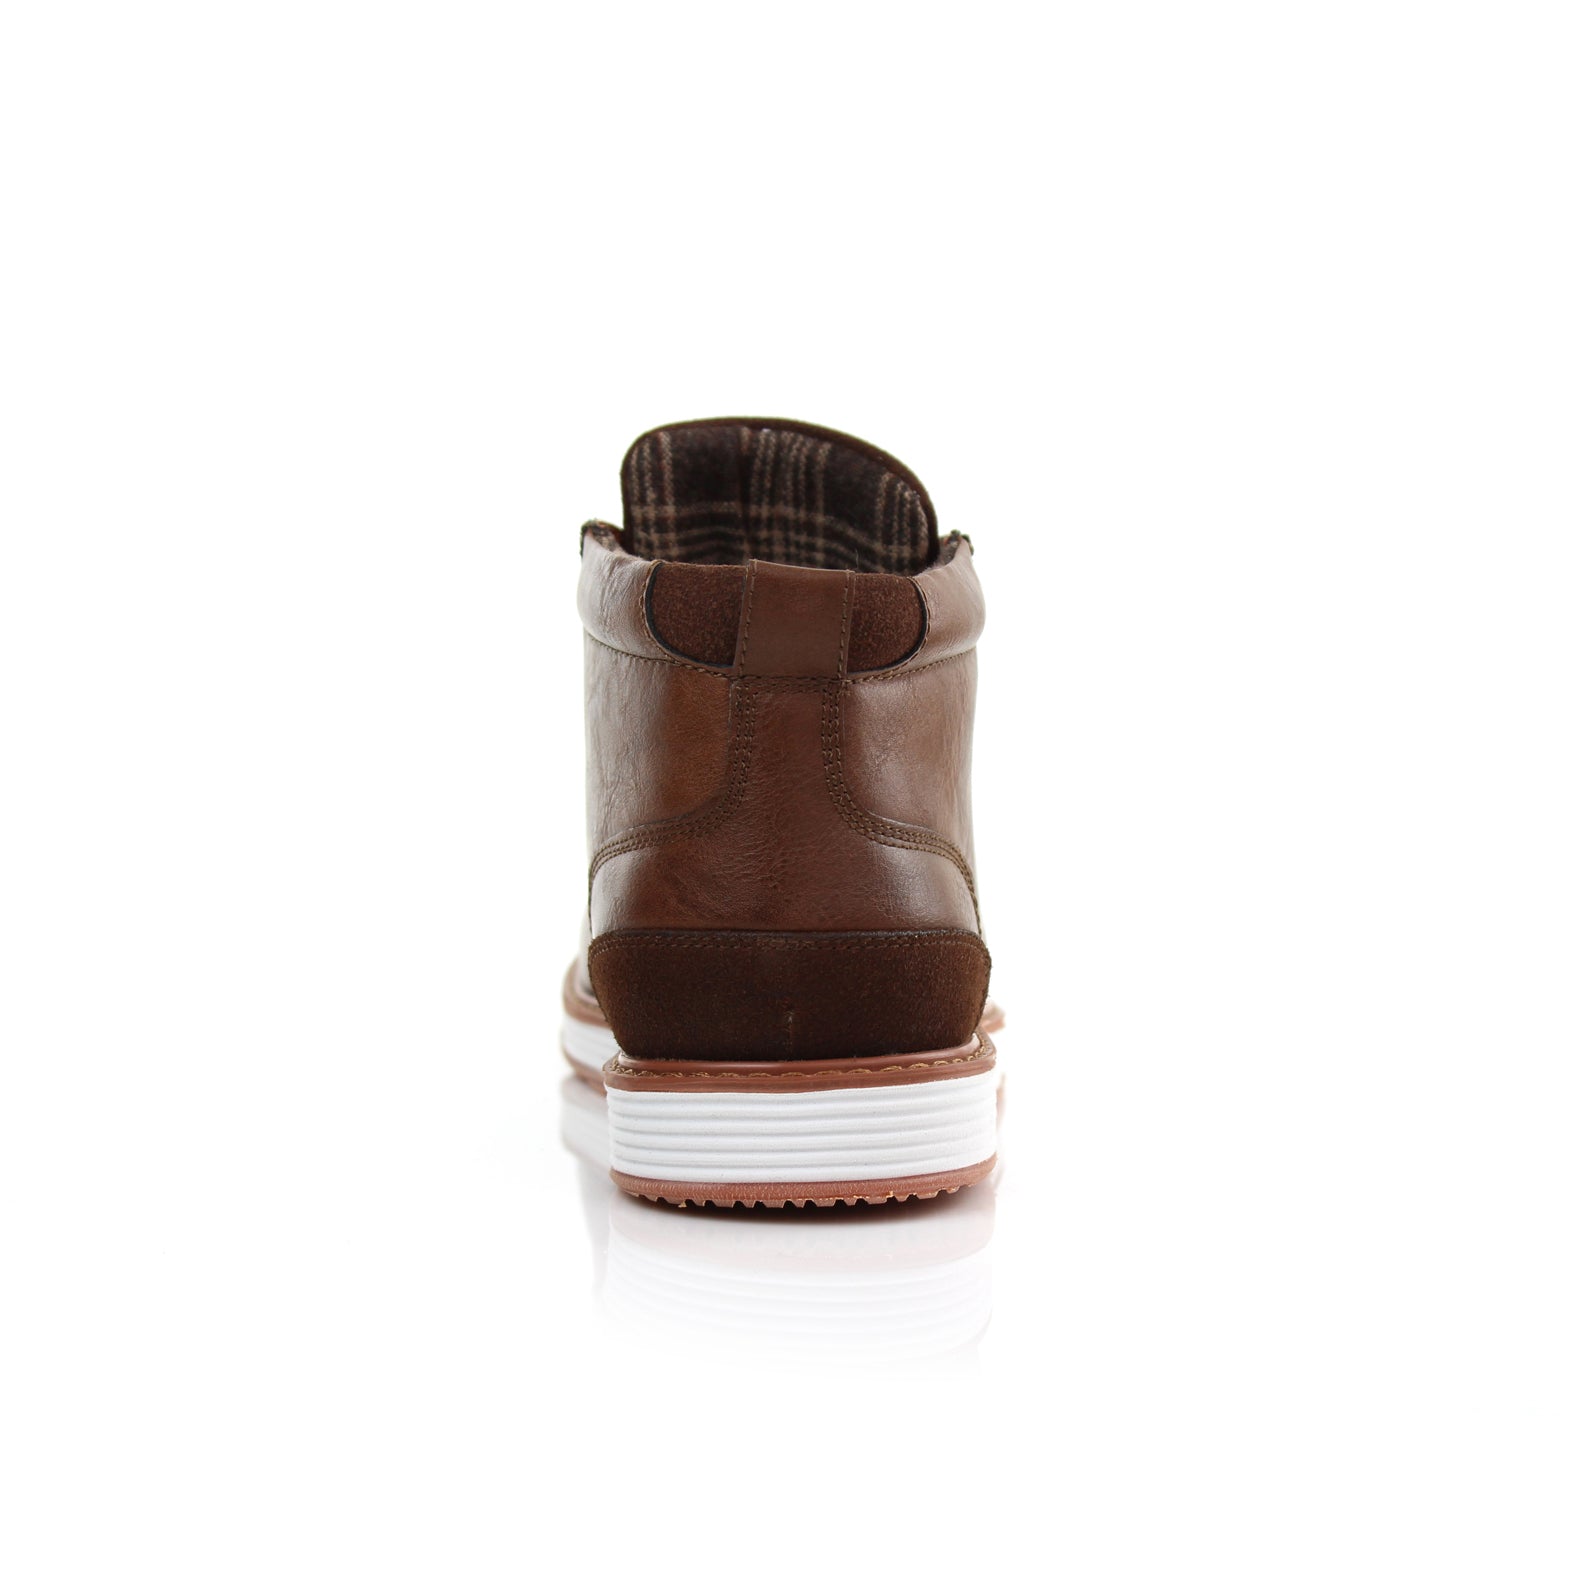 Sneaker Chukka Boots | Houstan by Ferro Aldo | Conal Footwear | Back Angle View